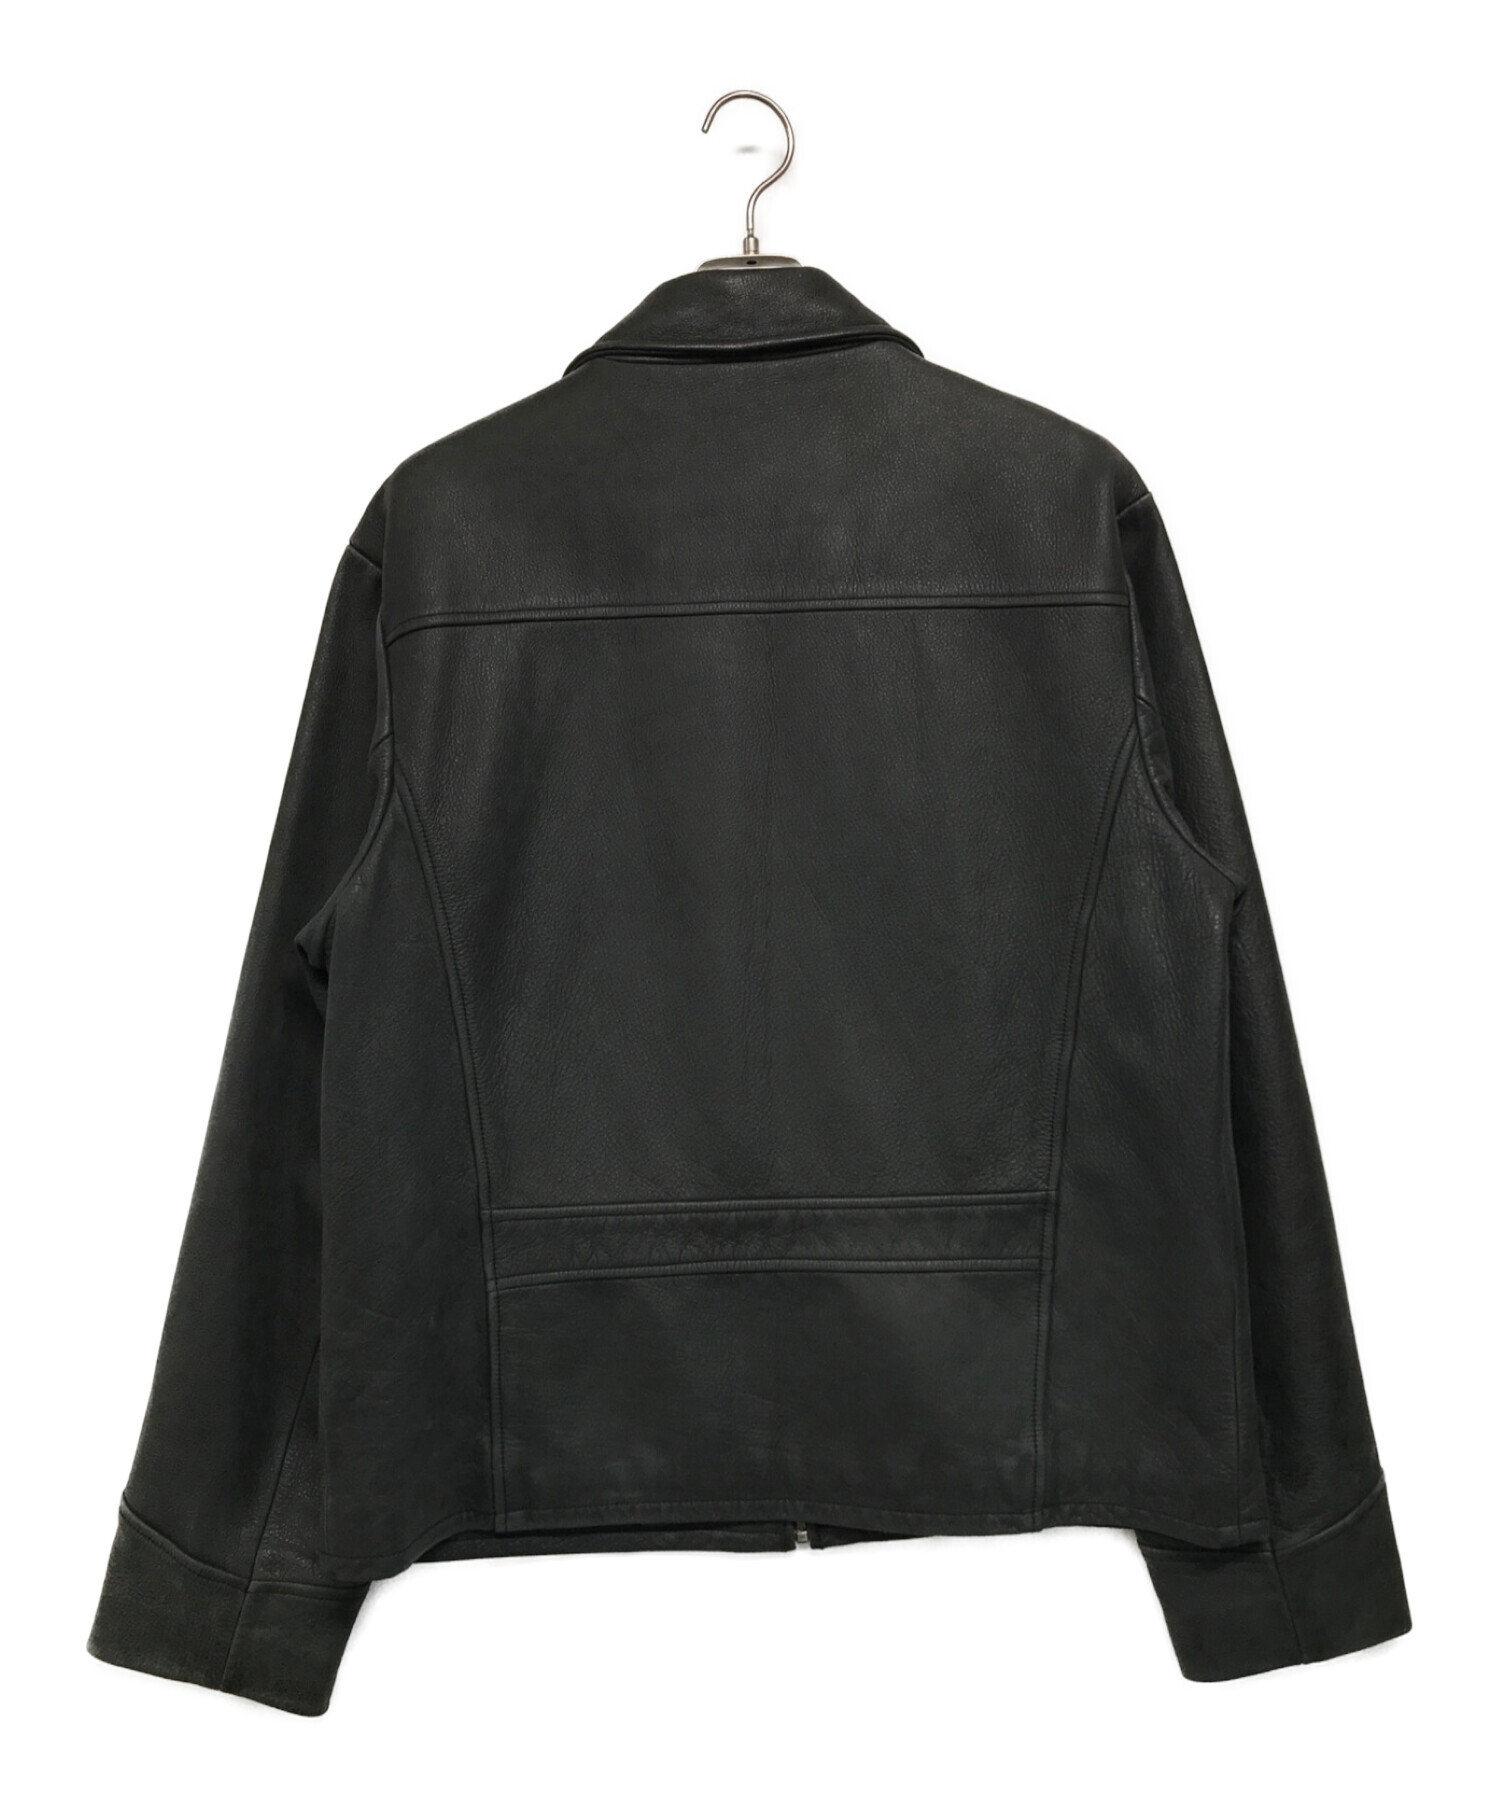 Timberland (ティンバーランド) 【古着】レザージャケット ブラック サイズ:SIZE L